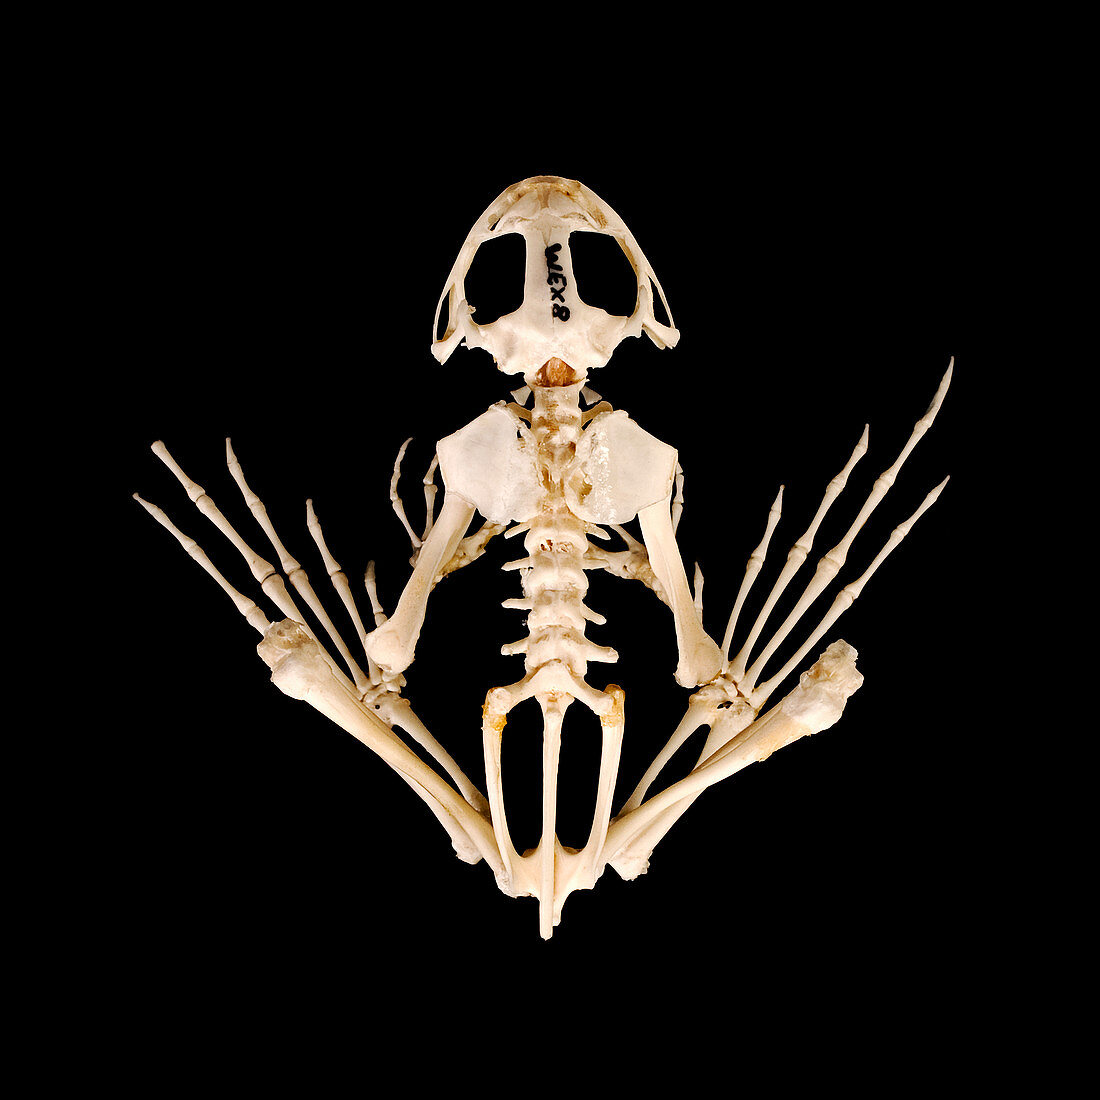 Frog skeleton